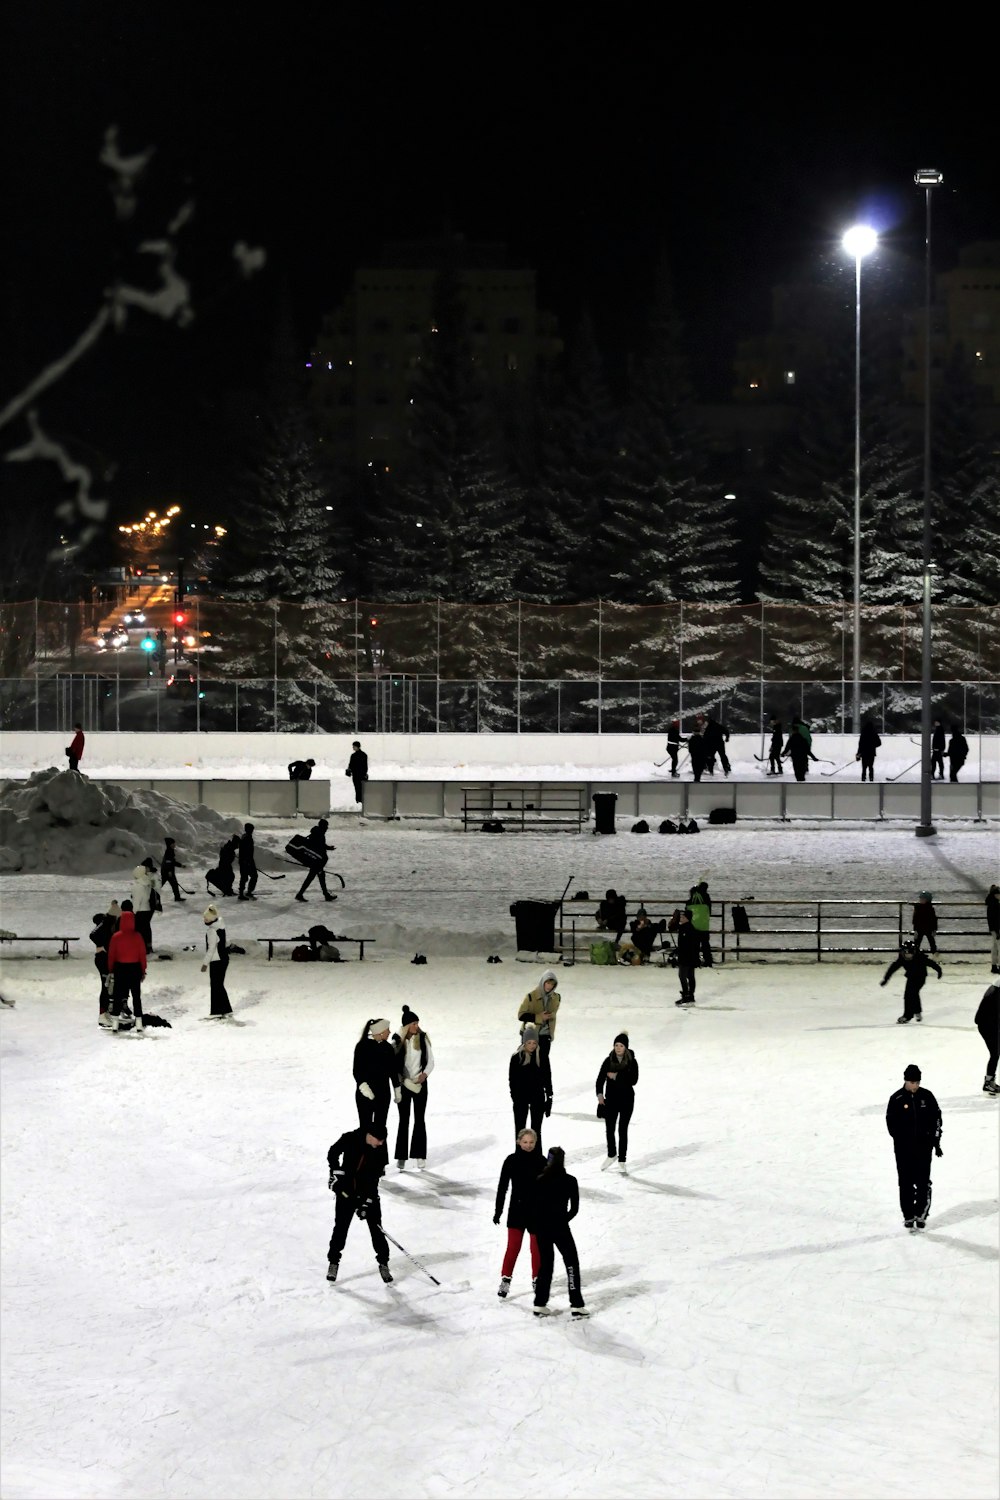 personnes jouant au hockey sur glace pendant la nuit